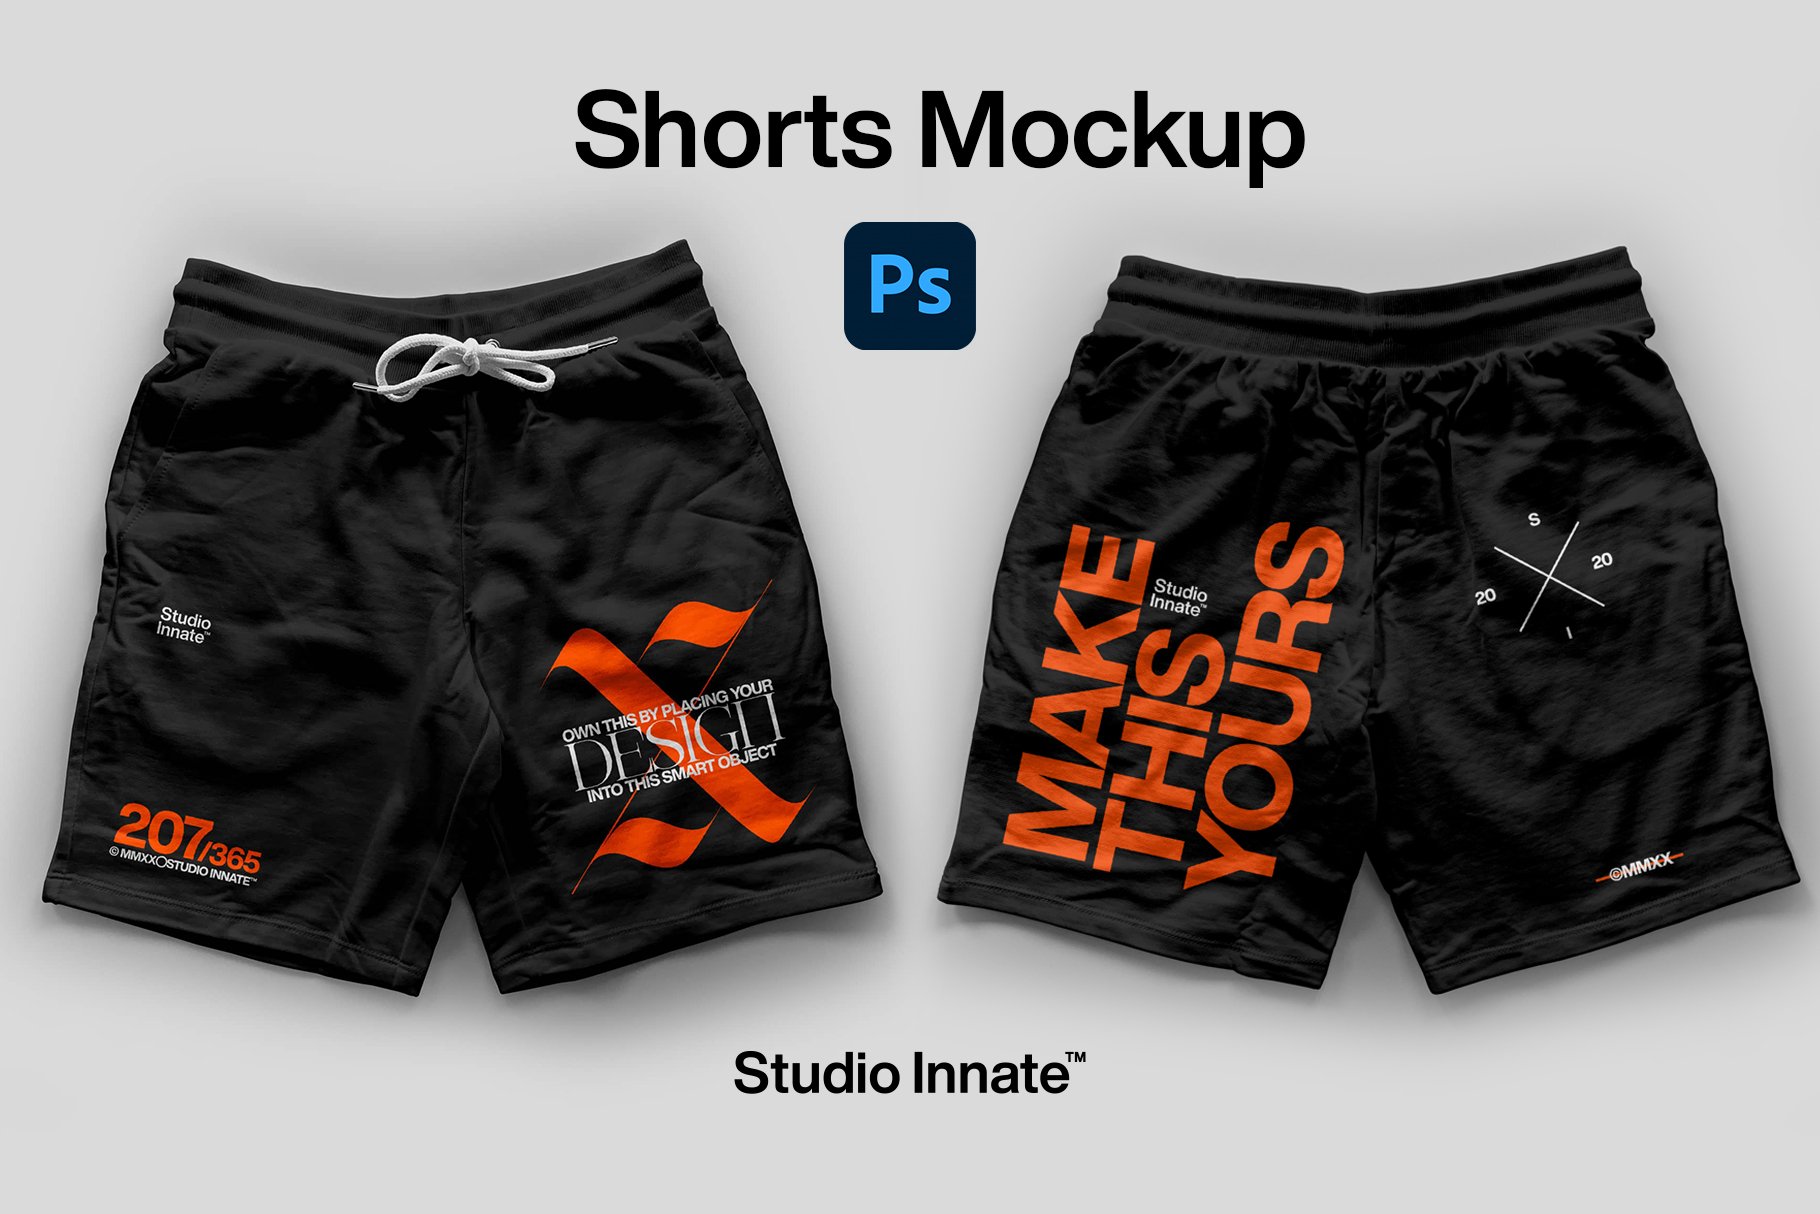 Shorts - Mockup Bundle cover image.